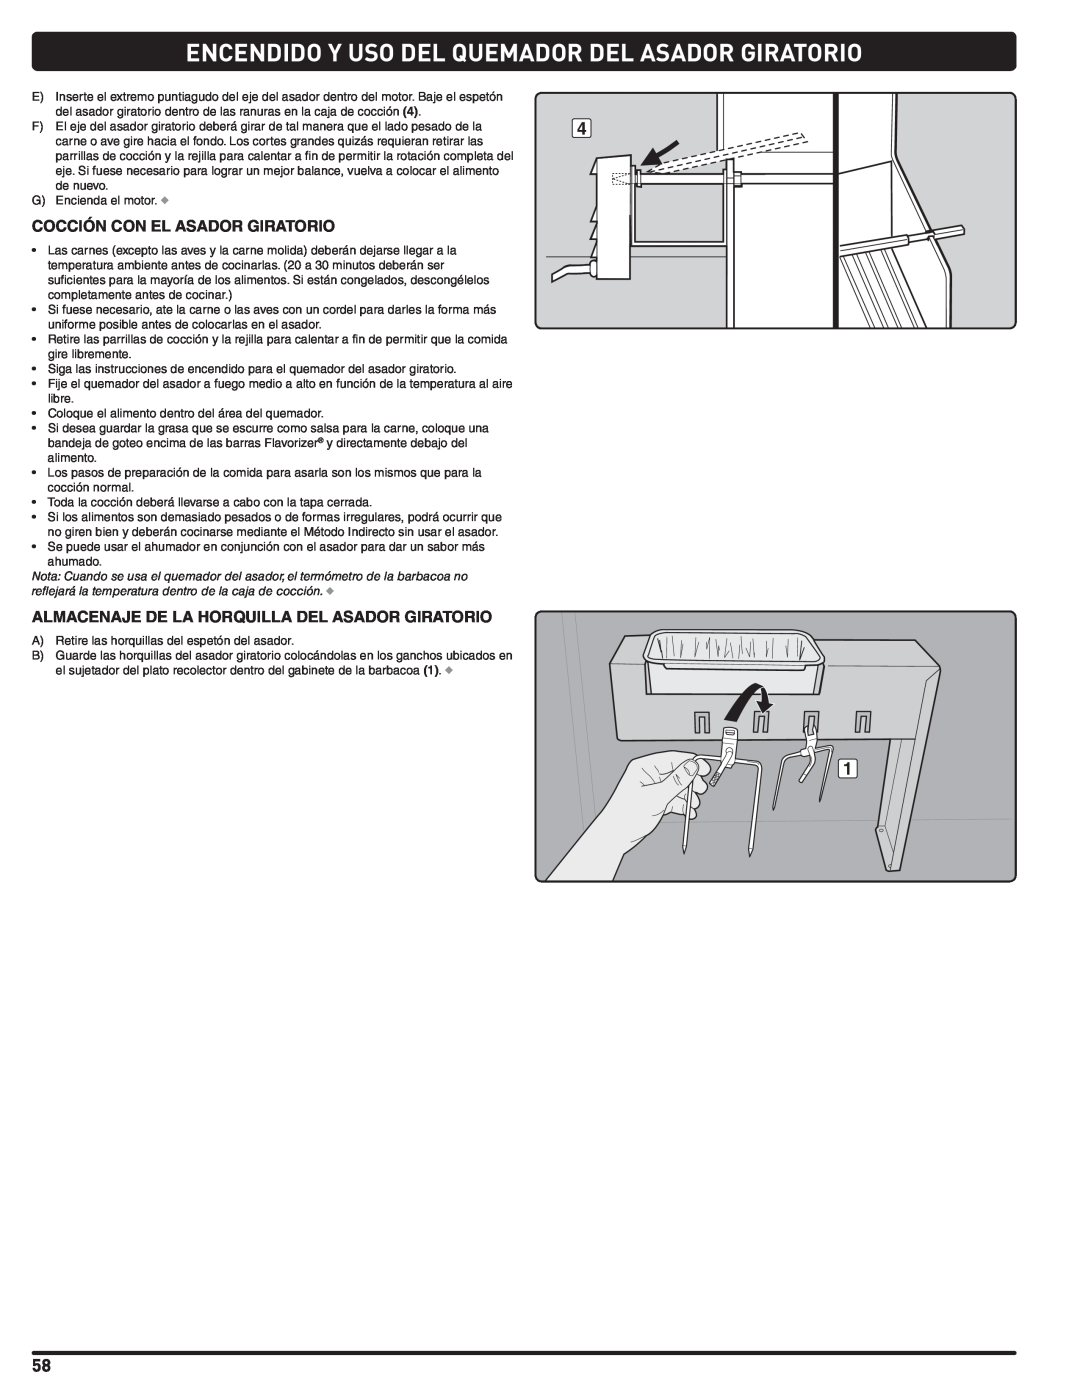 Weber 56576 manual Encendido Y Uso Del Quemador Del Asador Giratorio, Cocción Con El Asador Giratorio 